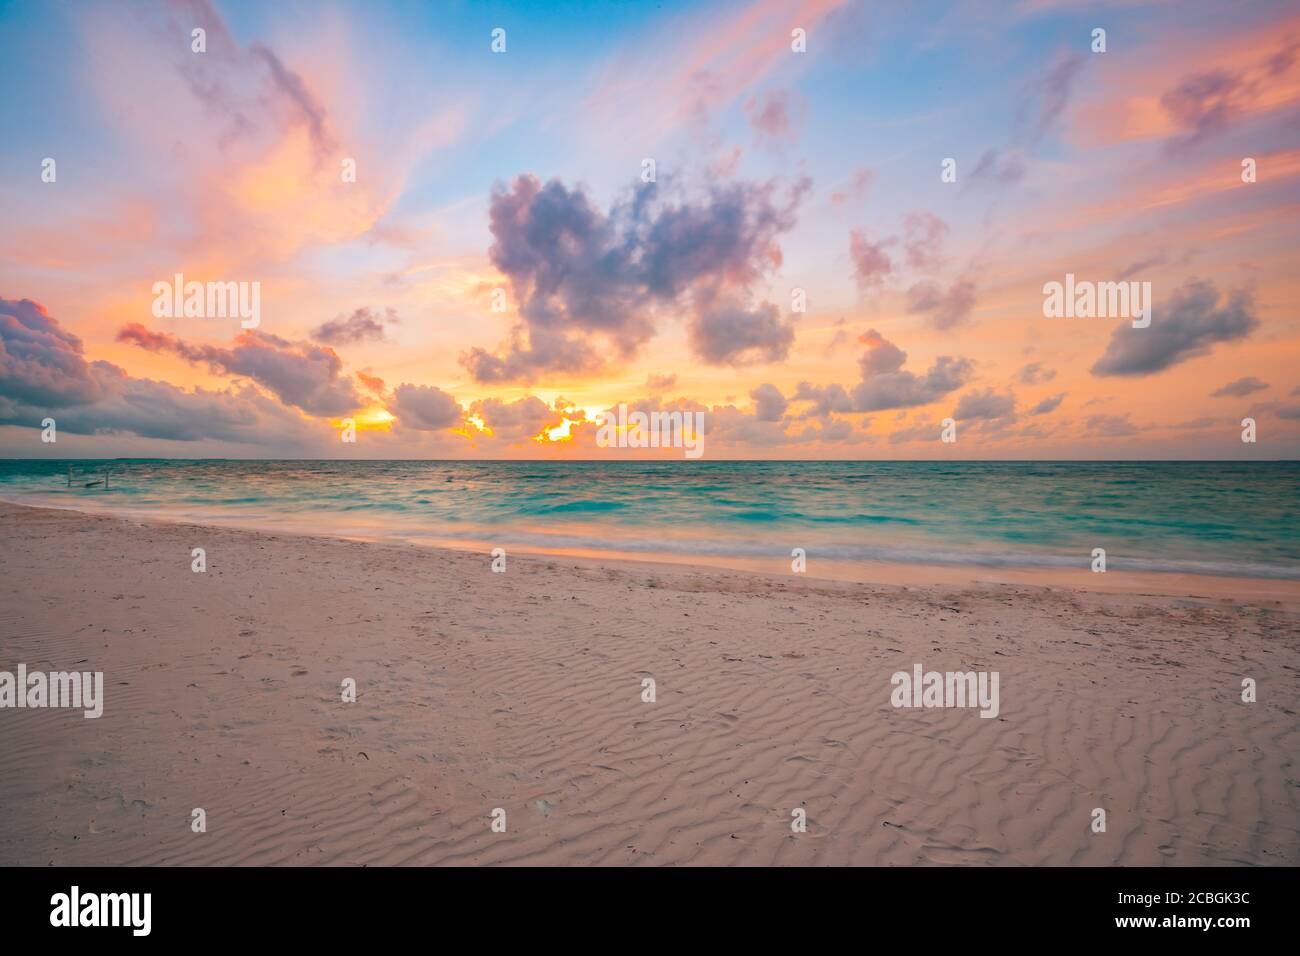 Meer Sand Himmel Konzept, Sonnenuntergang Farben Wolken, Horizont, horizontalen Hintergrund Banner. Inspirierende Naturlandschaft, schöne Farben, wunderbare Landschaft Stockfoto